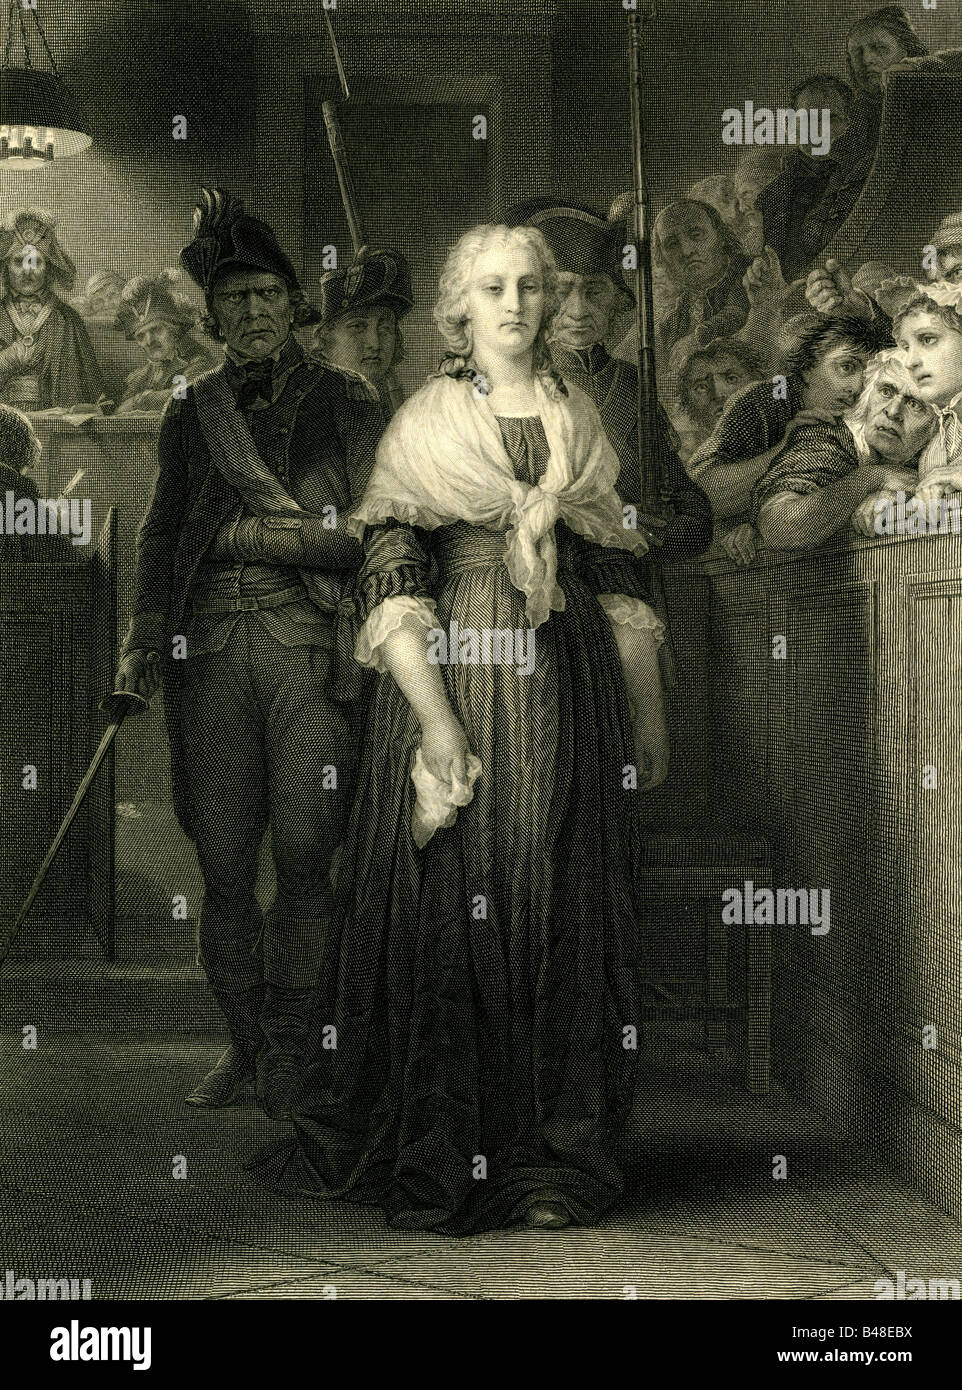 Marie Antoinette, 2.11.1755 - 16.10.1793, Reine consort de France 10.5.1774 - 21.9.1792, après avoir été condamnée par le tribunal révolutionnaire, Paris, 14.10.1793, gravure, XIXe siècle, Banque D'Images